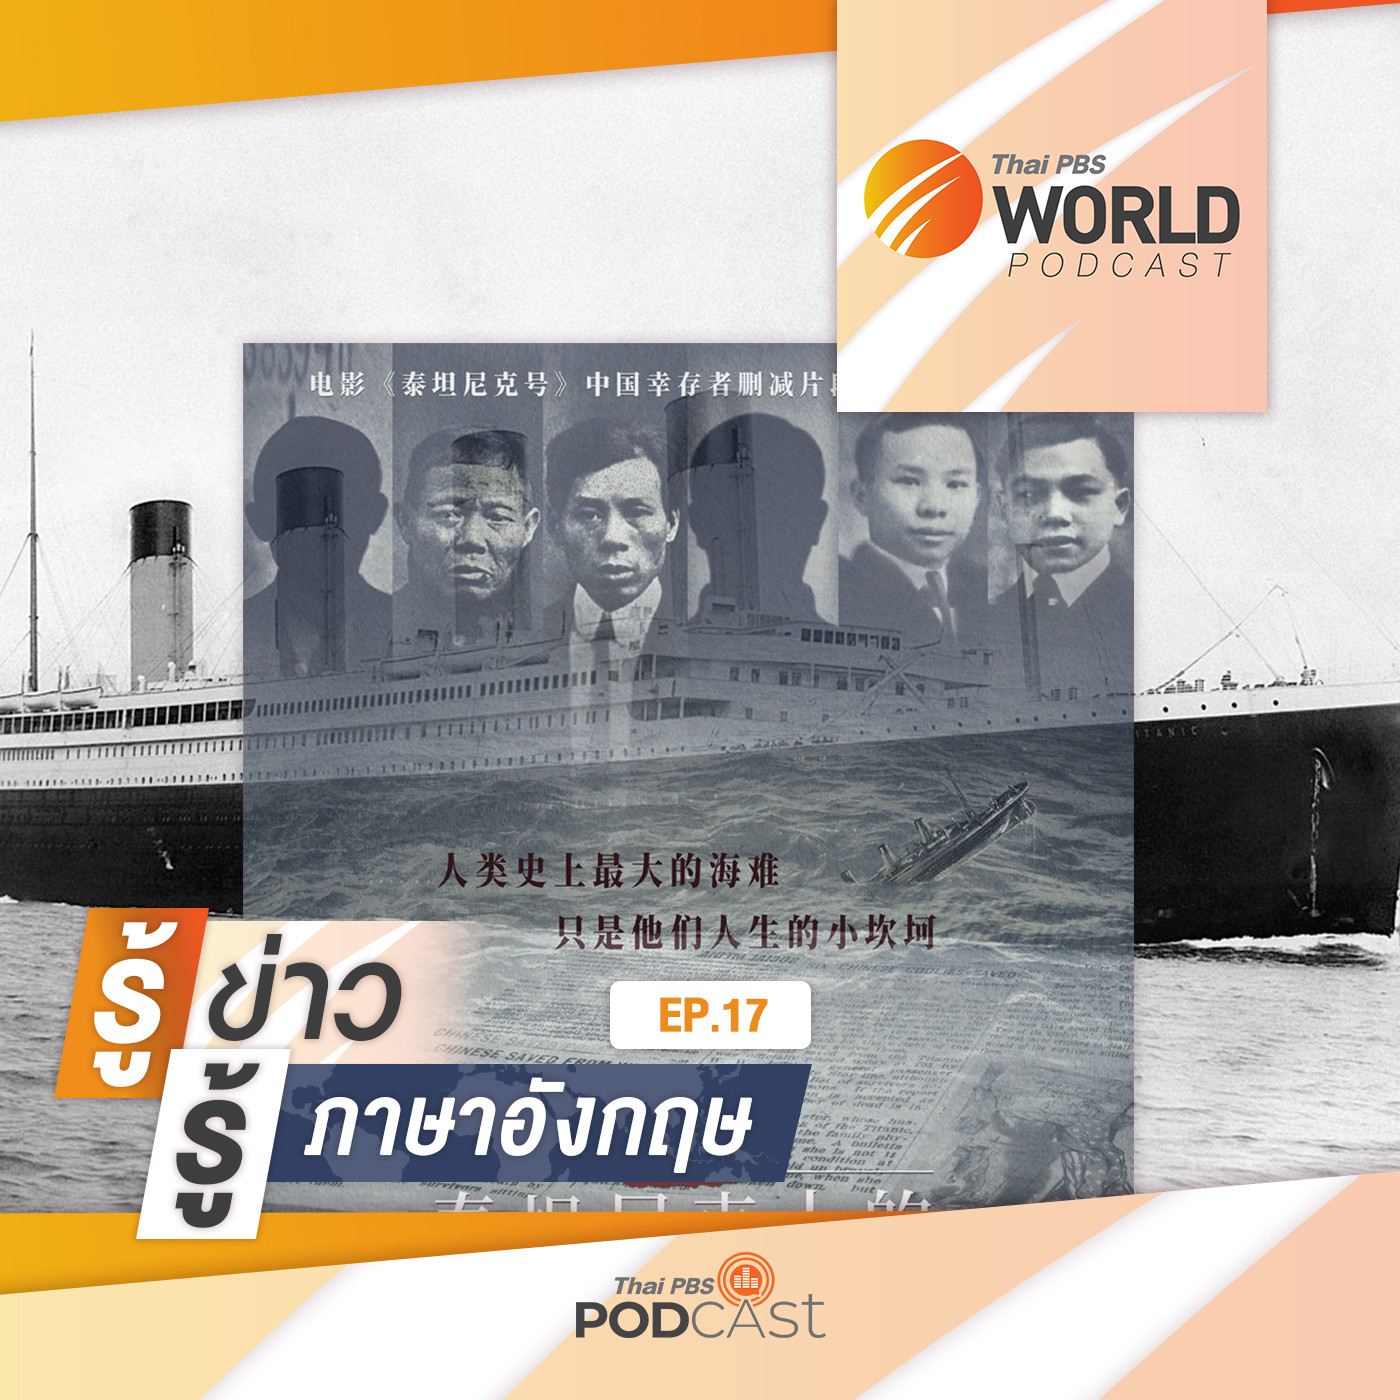 Thai PBS World Podcast - รู้ข่าว รู้ภาษาอังกฤษ EP. 17: รู้ข่าว รู้ภาษาอังกฤษ - เรื่องราวของผู้รอดชีวิตชาวจีน 6 คน จากเหตุเรือไททานิกล่ม